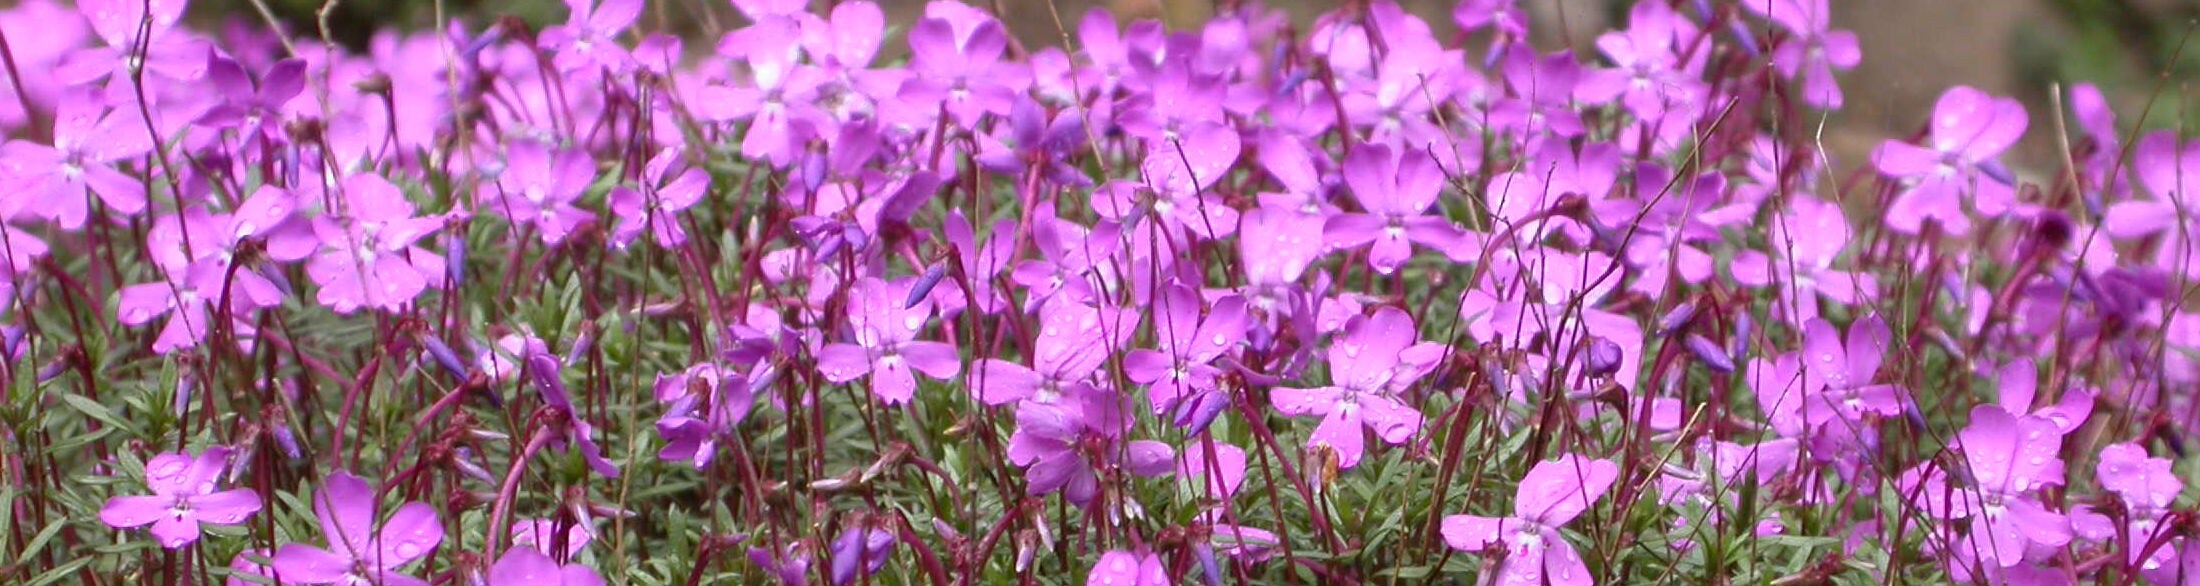 Floración de violetas endémicas en el parque natural de Cazorla, Segura y Las Villas